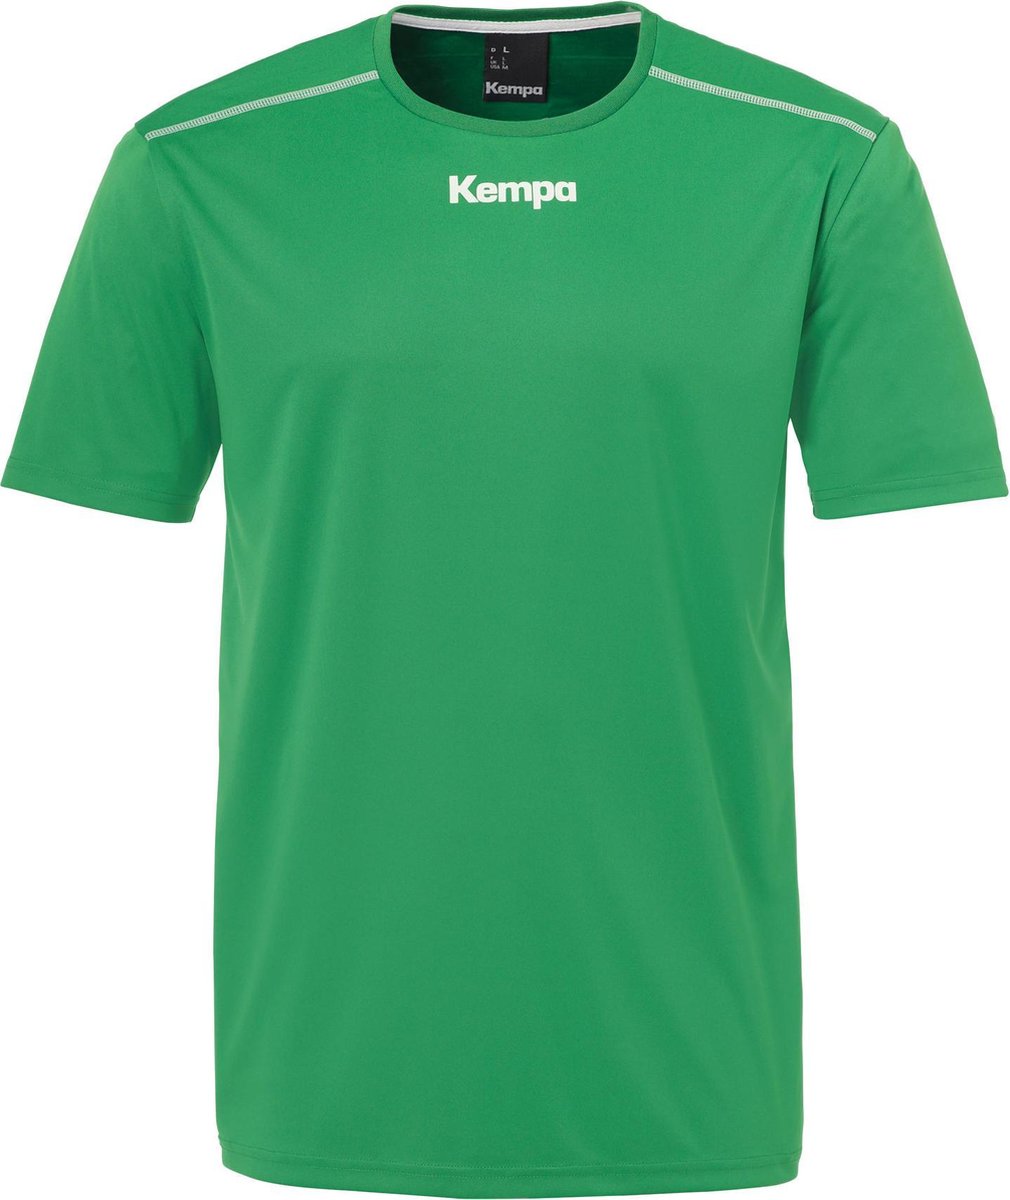 Kempa Poly Sportshirt performance - Maat XL - Mannen - groen